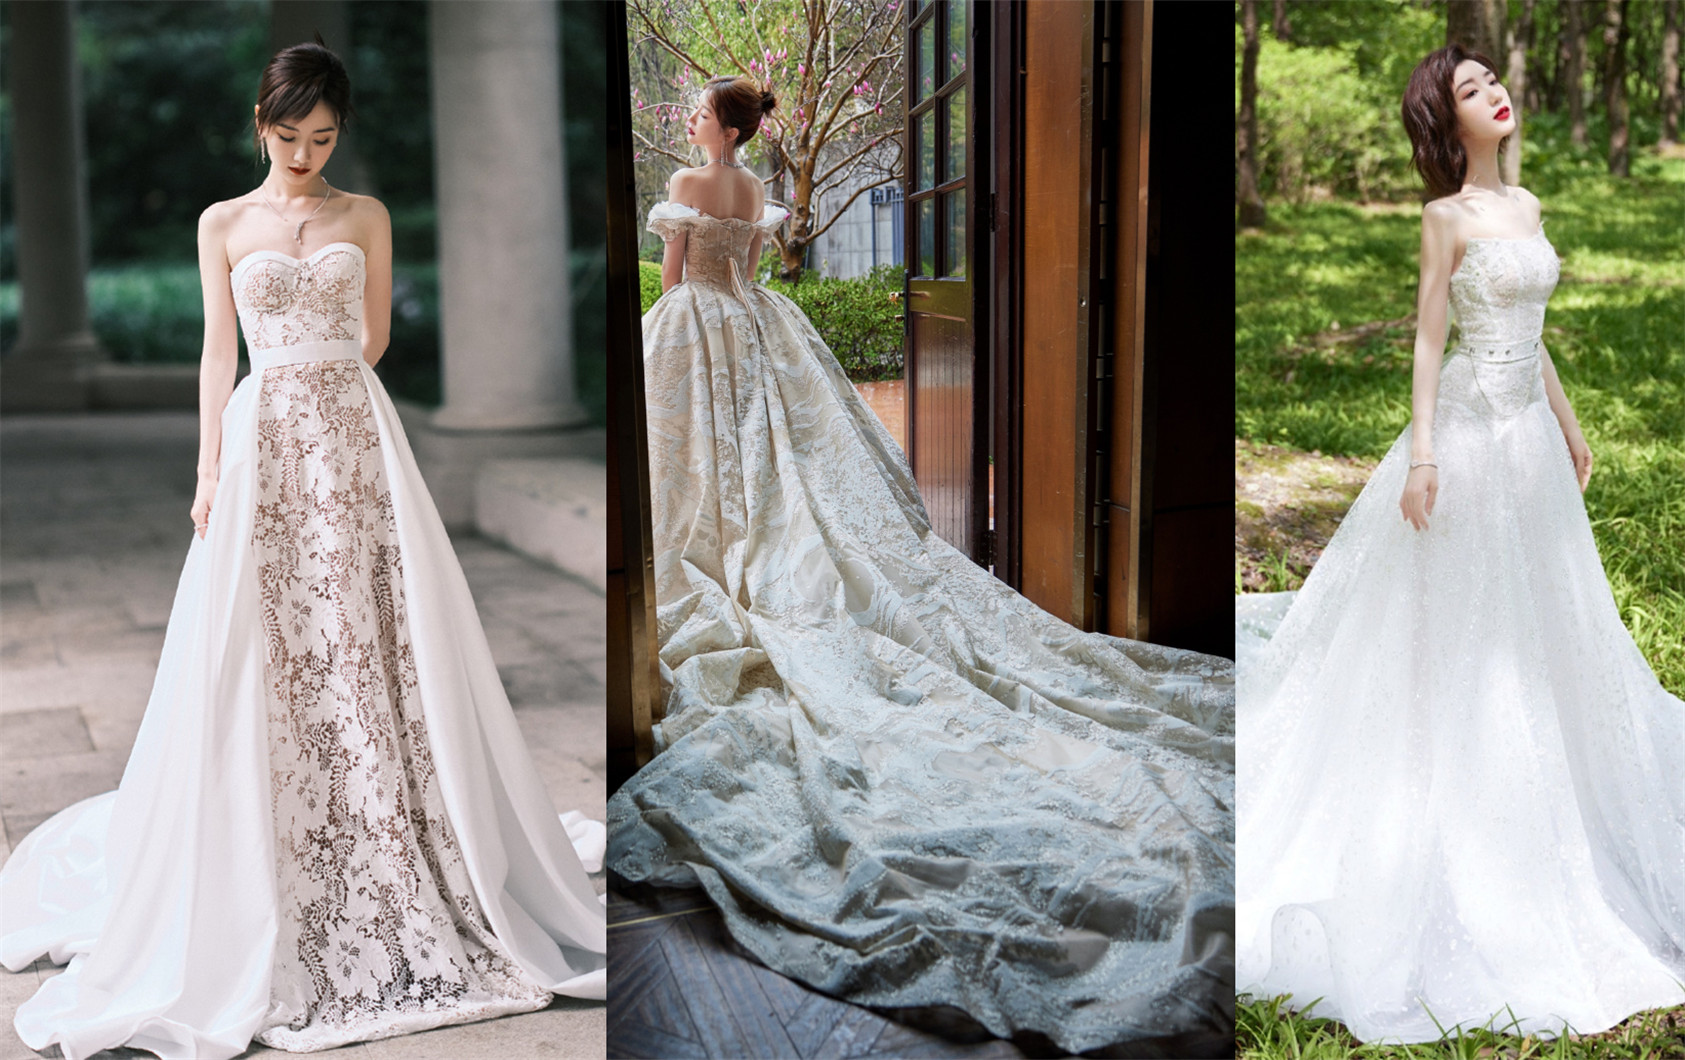 Mỹ nhân Hoa ngữ khi diện váy cưới: Ai là người đẹp nhất?